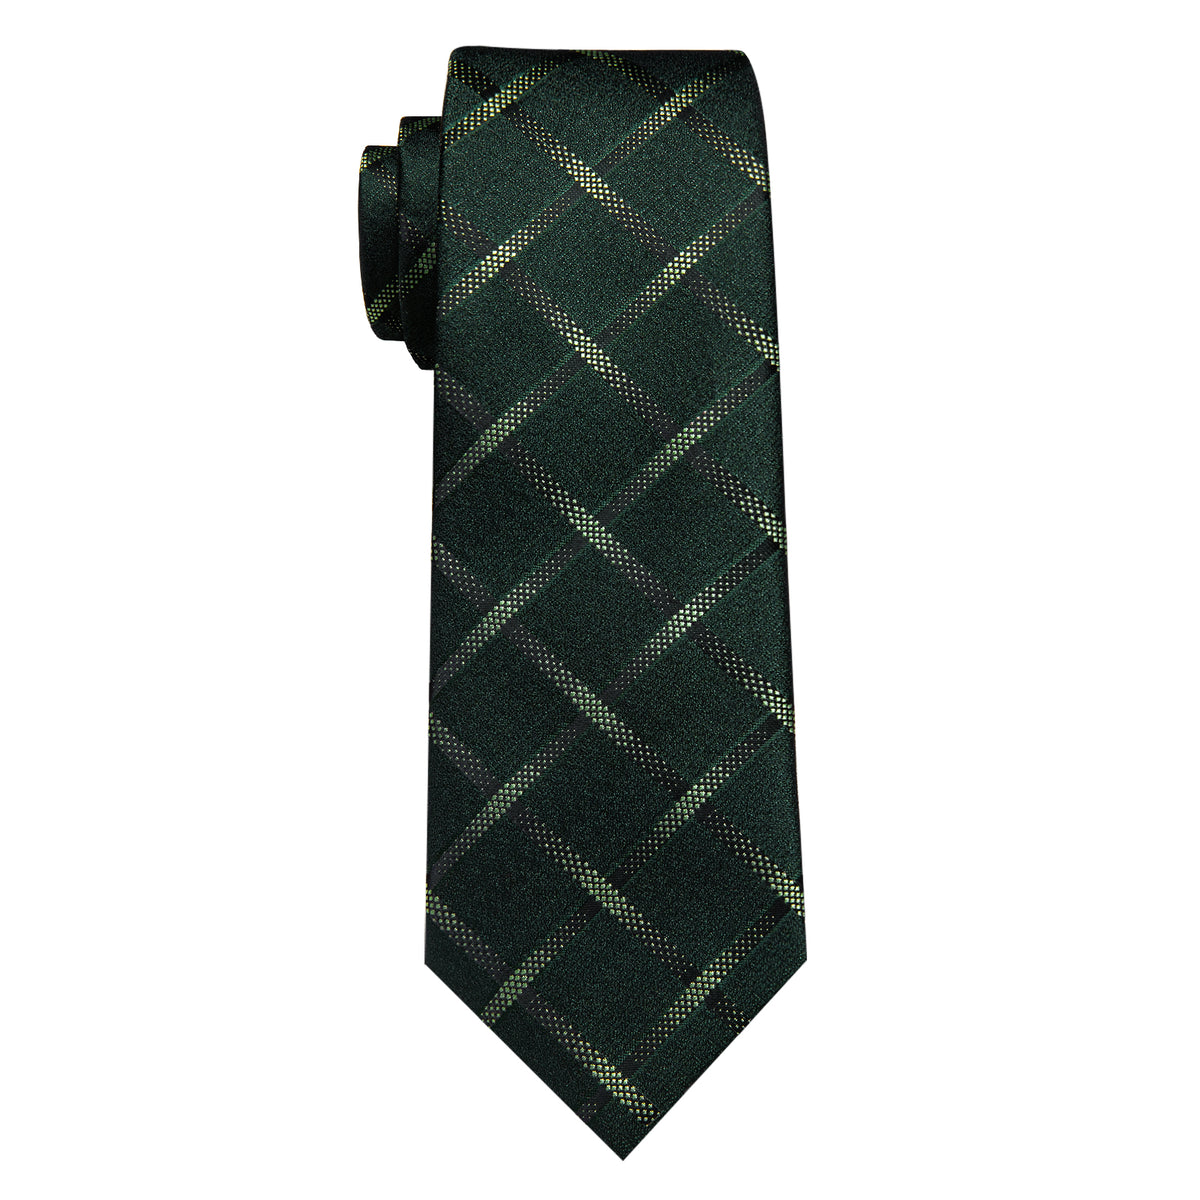 Dark Green Plaid Men's Necktie Pocket Square Cufflinks Set